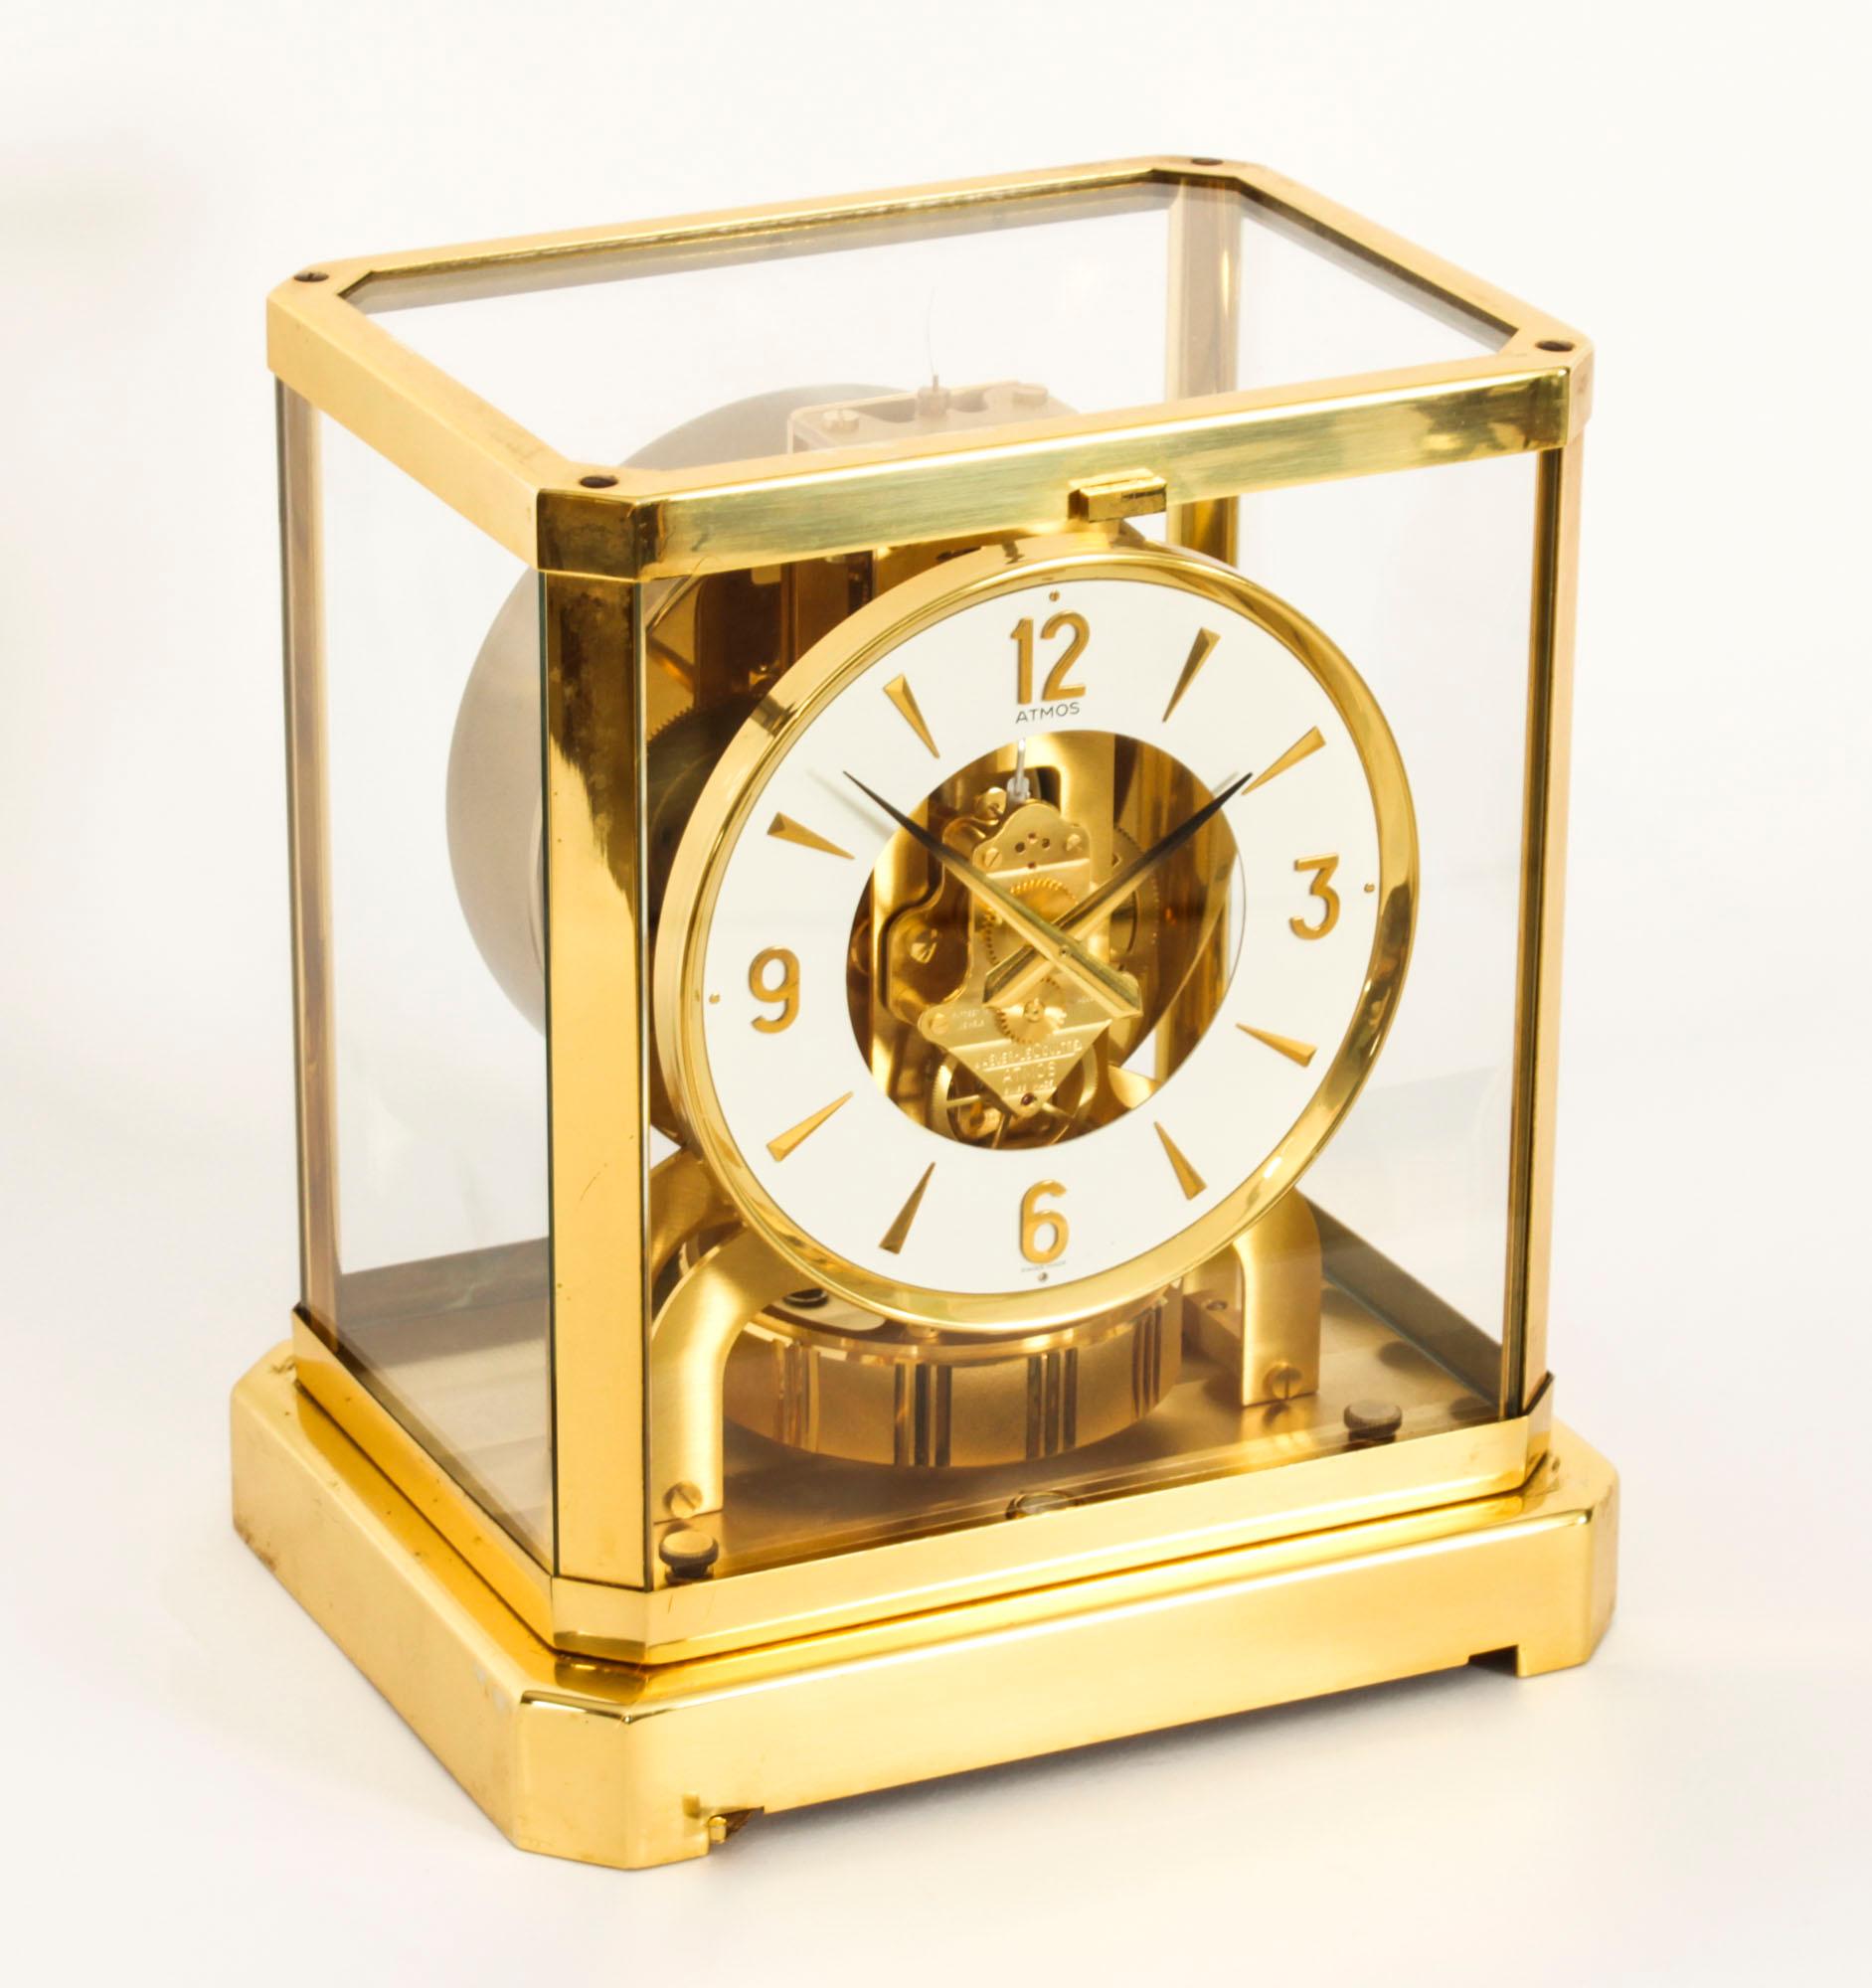 Dies ist eine sehr elegante Vintage Atmos ewigen Mantel Uhr von Jaeger-LeCoultre, mit einem Juwelen Uhrwerk mit ihrer ref  Nr. 464788 und aus dem Jahr CIRCA 1970.

Die Uhr befindet sich in einem polierten, vergoldeten, rechteckigen Messinggehäuse